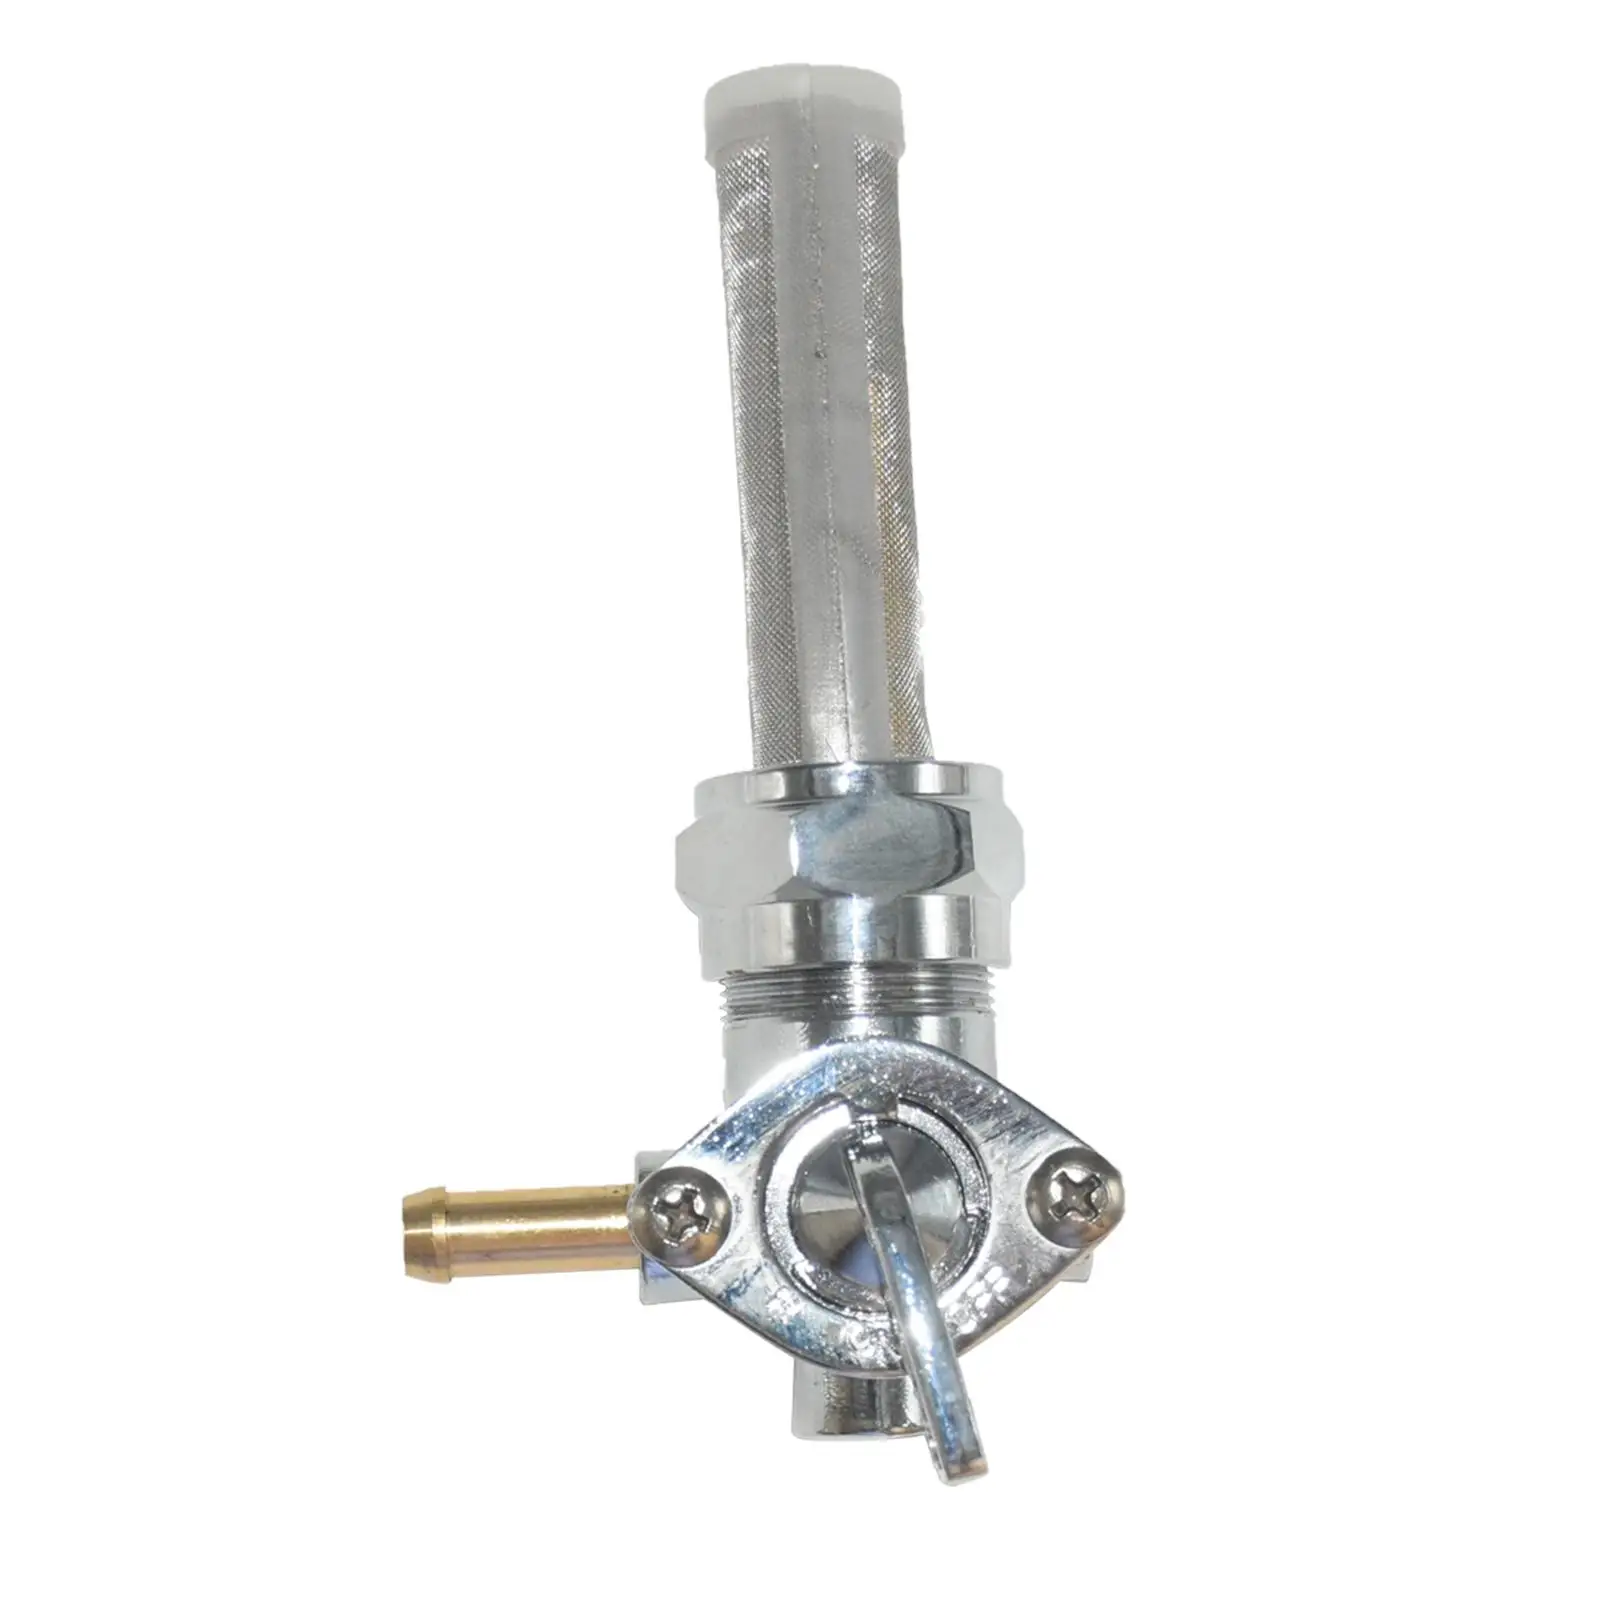 

Переключатель топливного клапана, запасной элемент, элемент клапана для мотоцикла